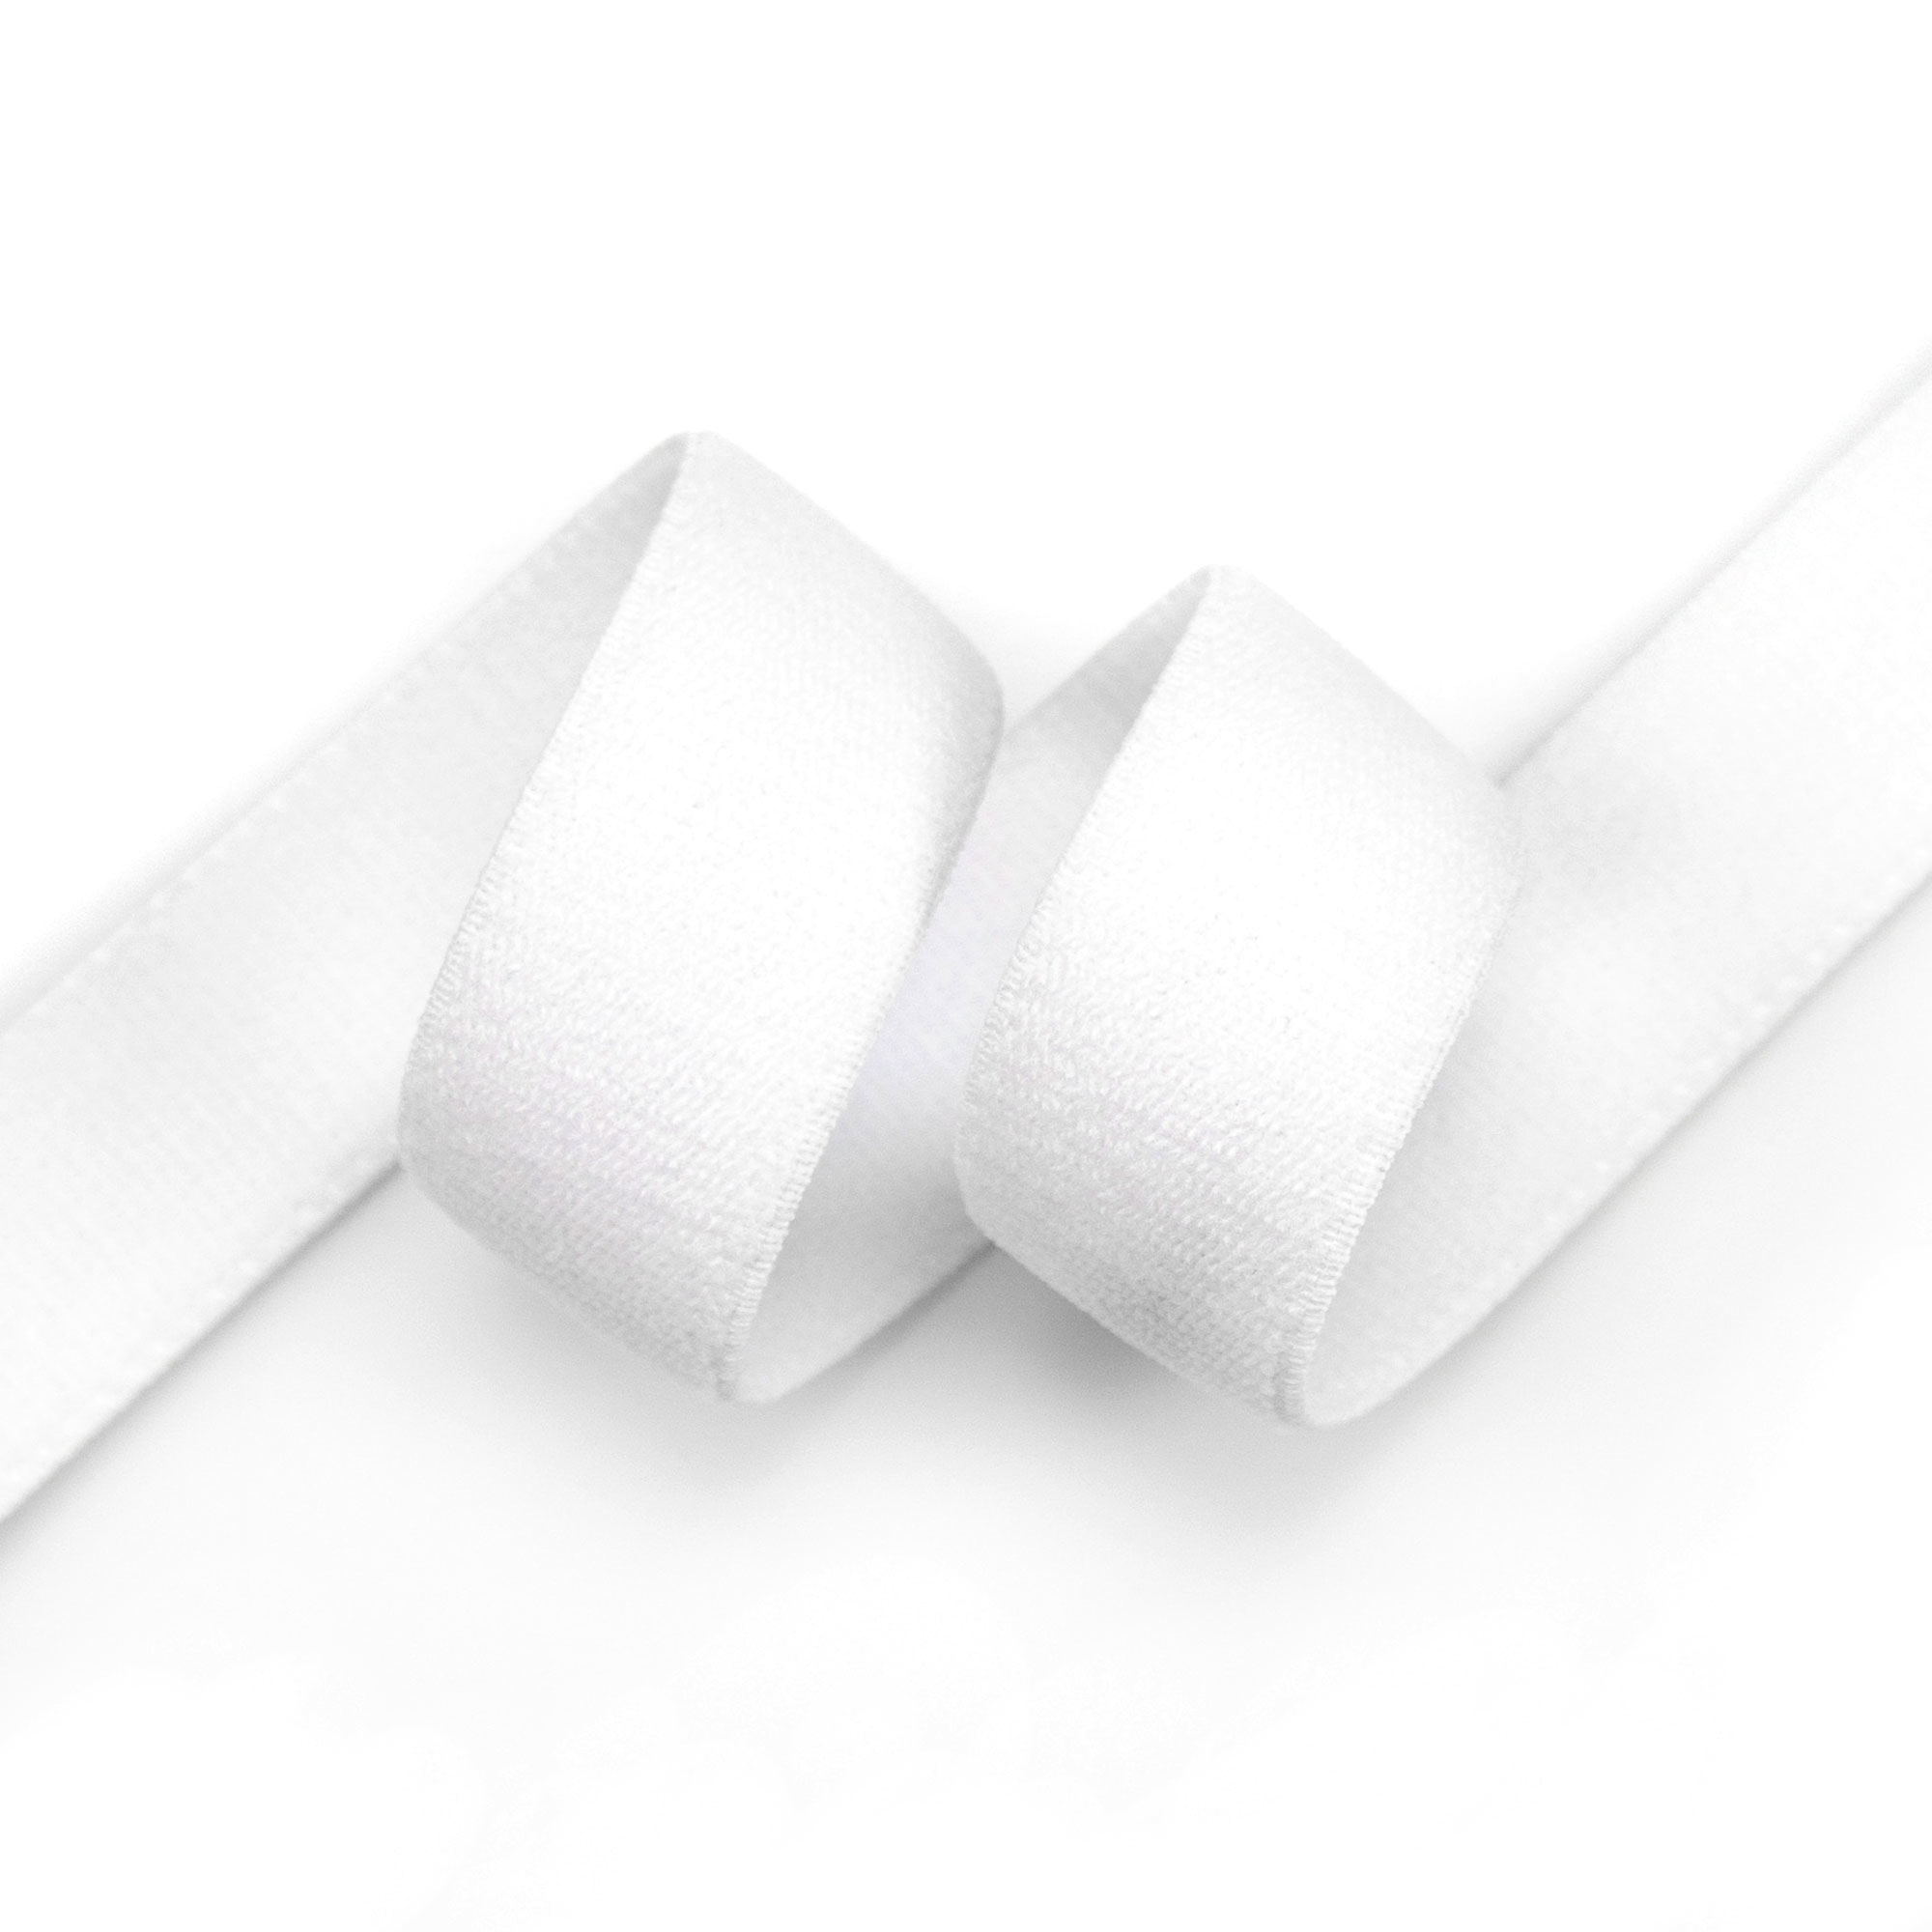 Wolle Ilkadim - 25 lfdm. Gummiband soft 3mm rund weiß, elastische Gummilitze